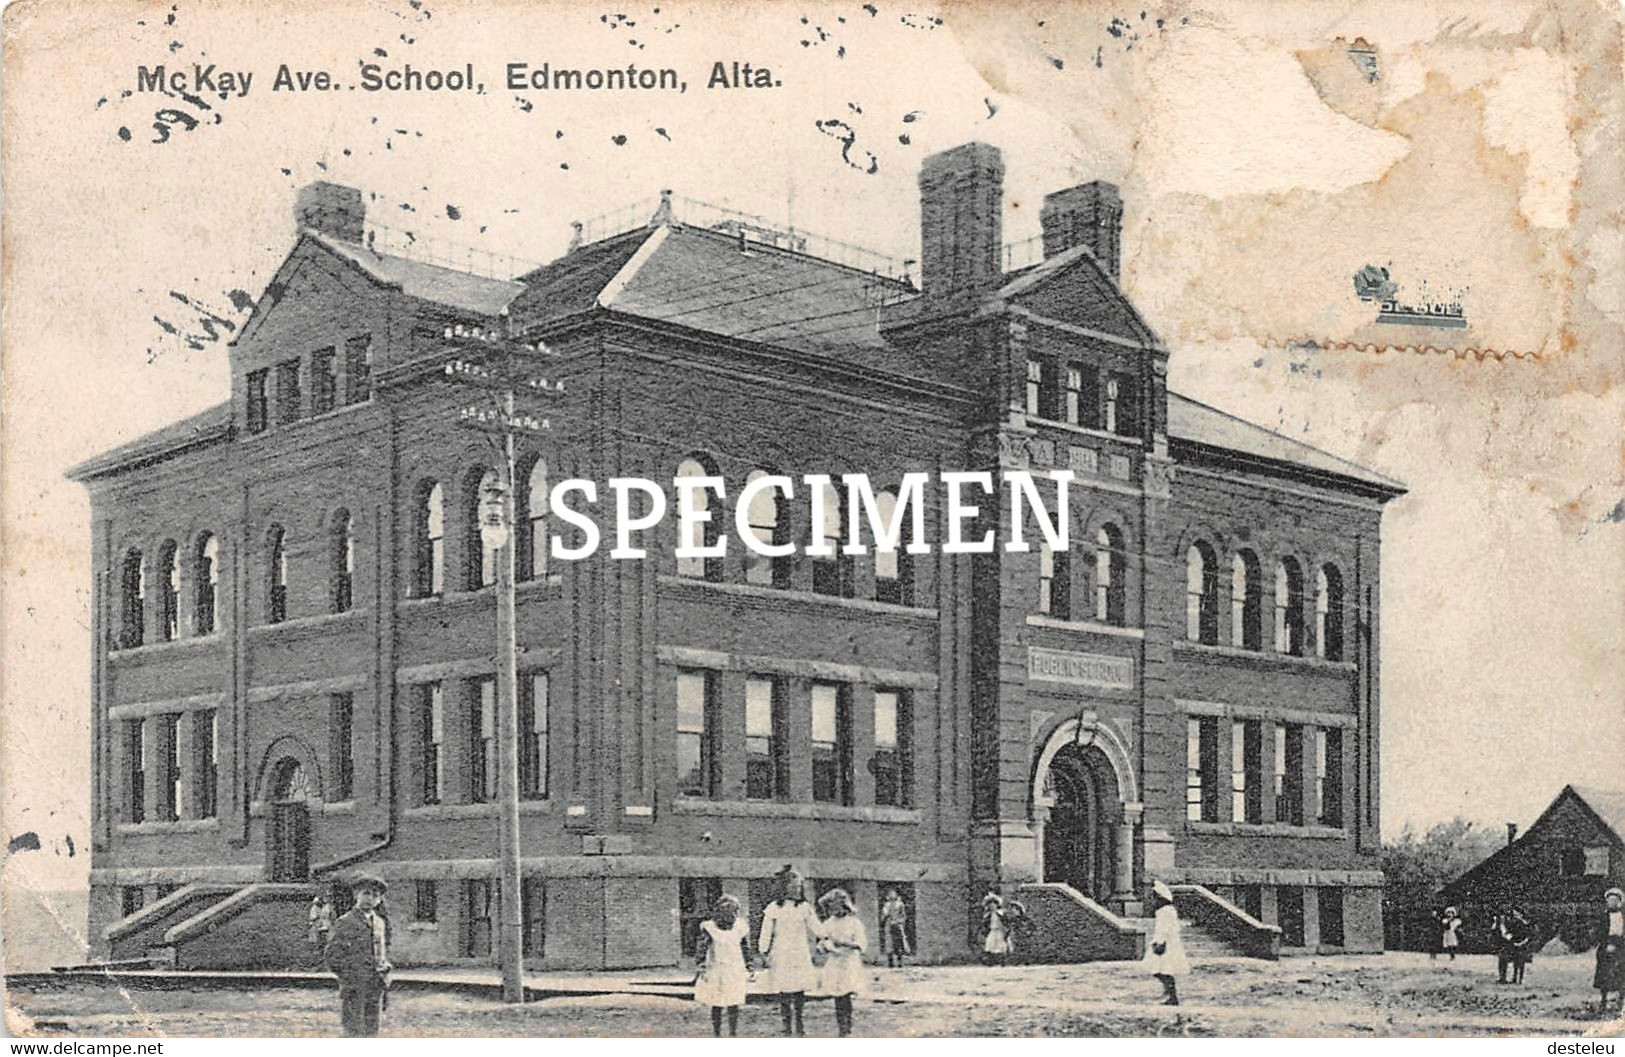 McKay Ave. School   - Edmonton - Edmonton